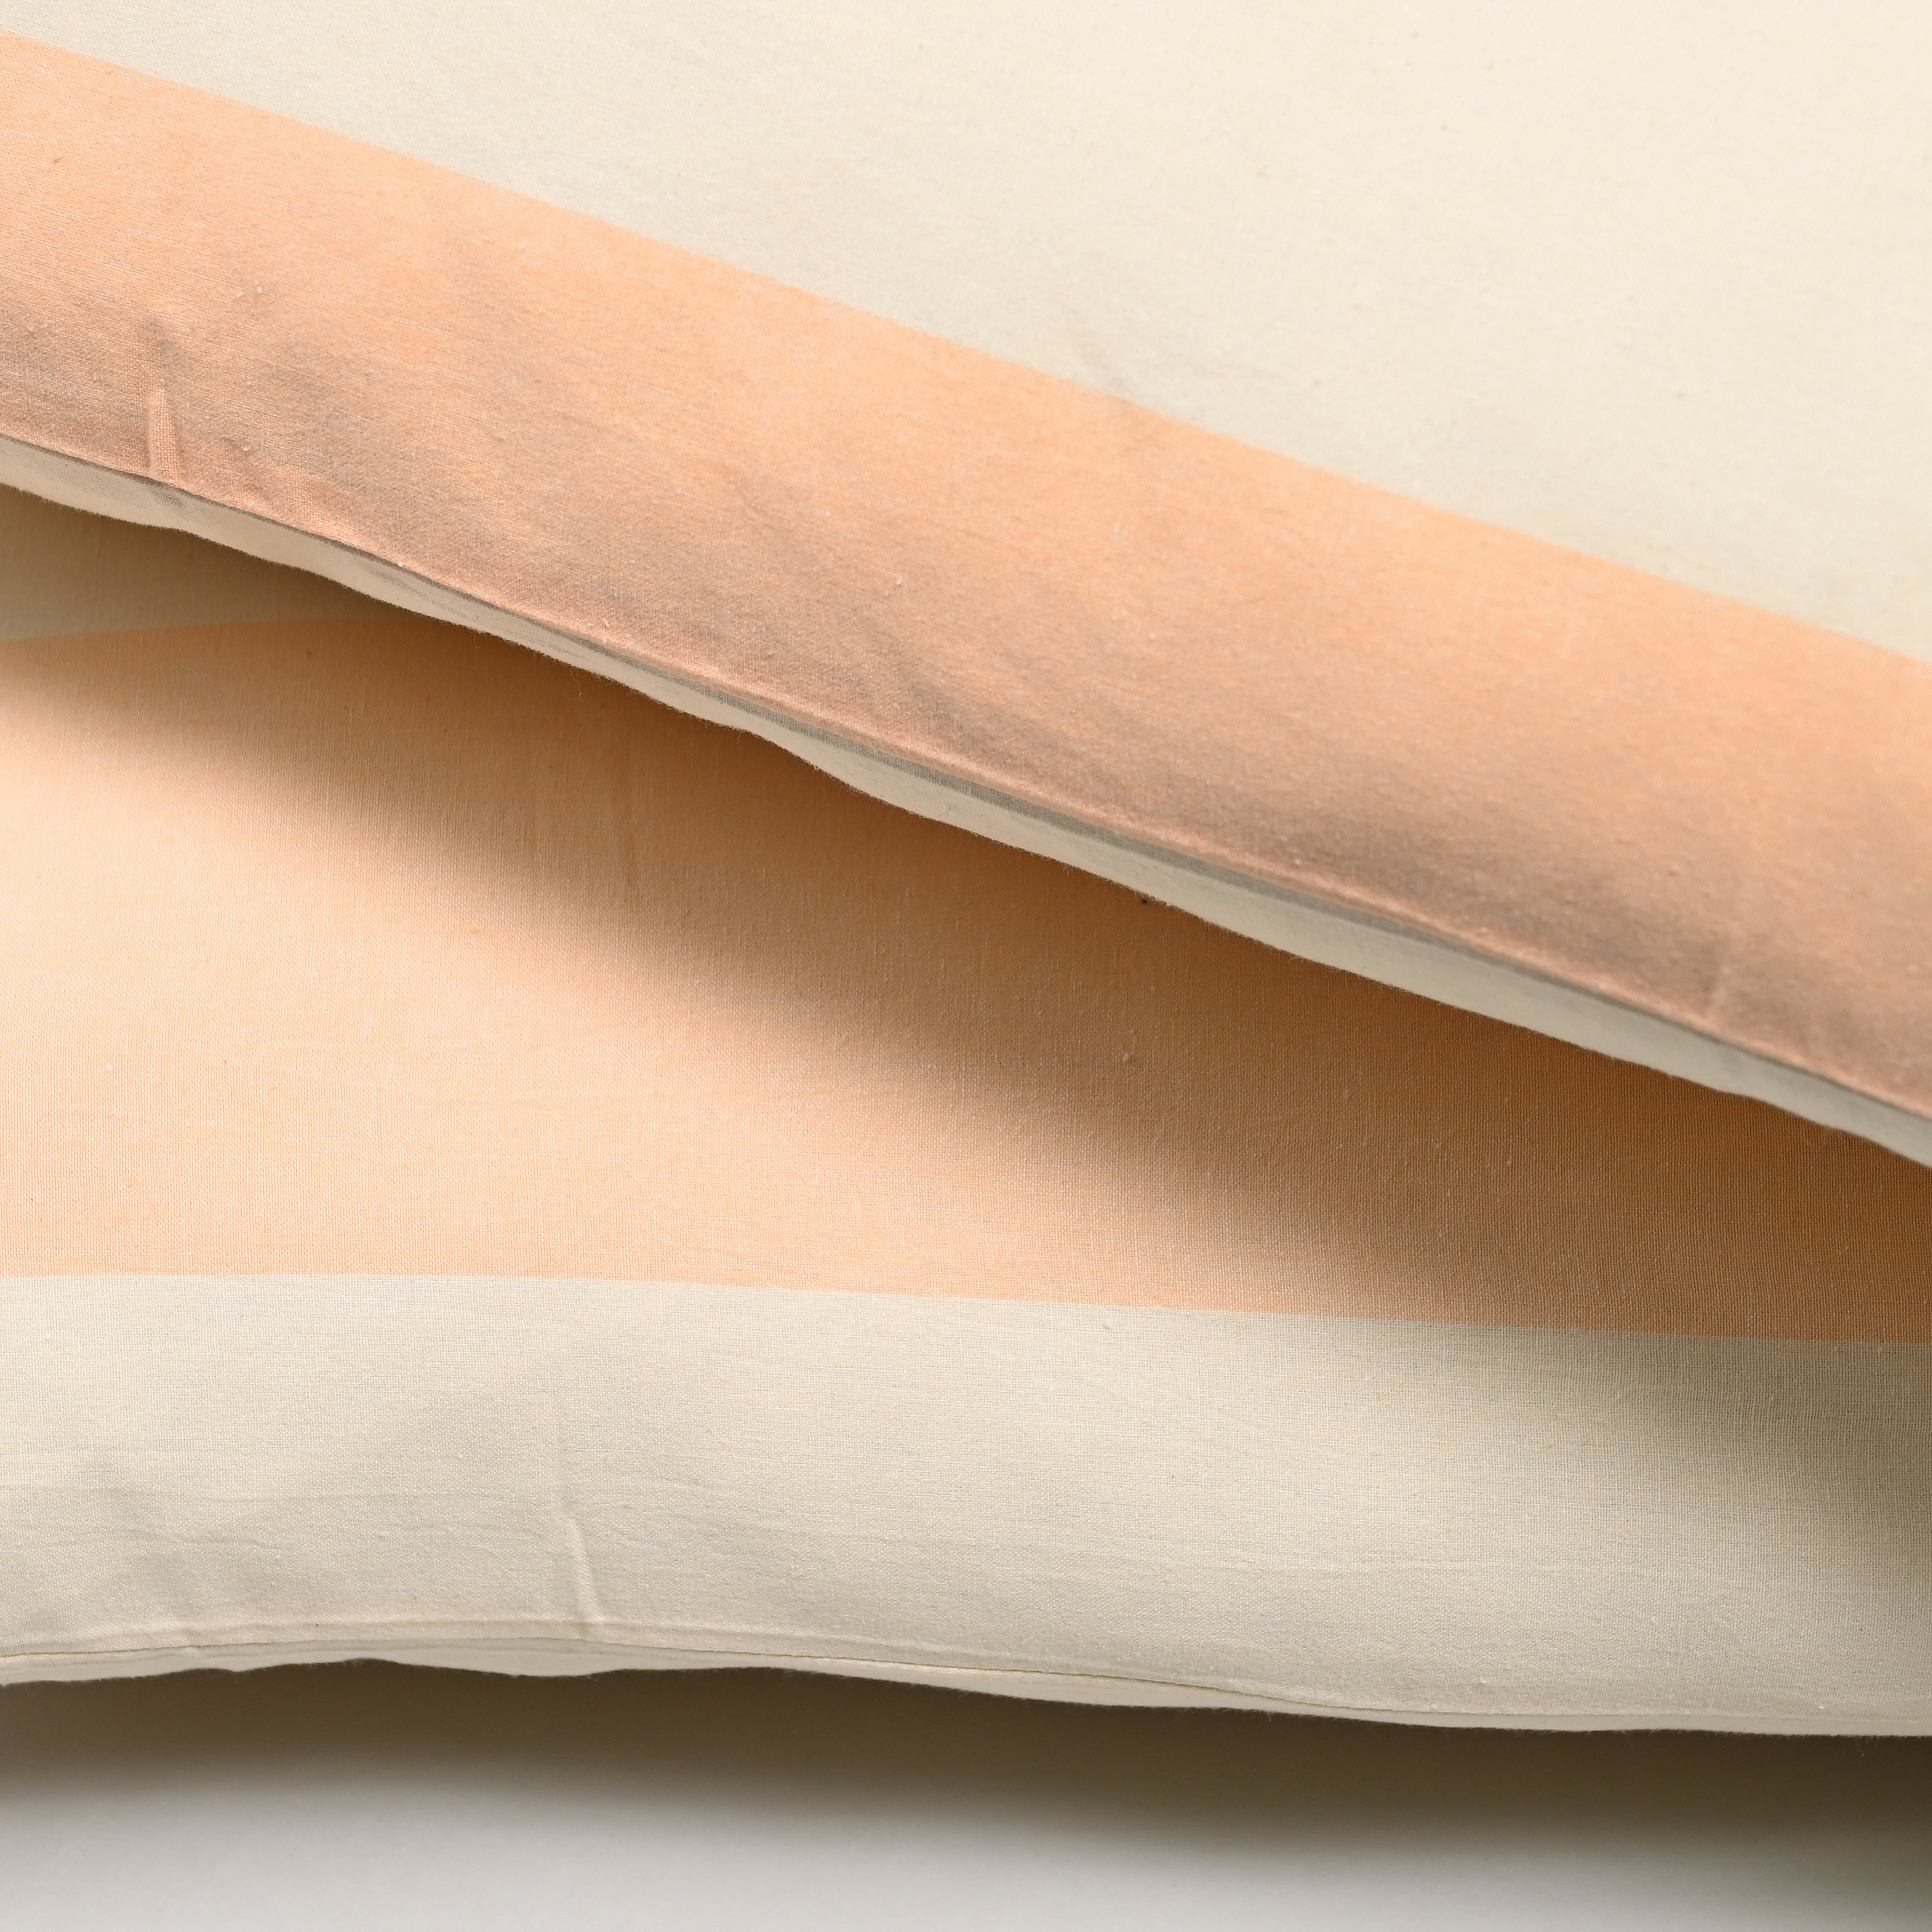 Bold Stripe Apricot Pillowcase, Set of 2